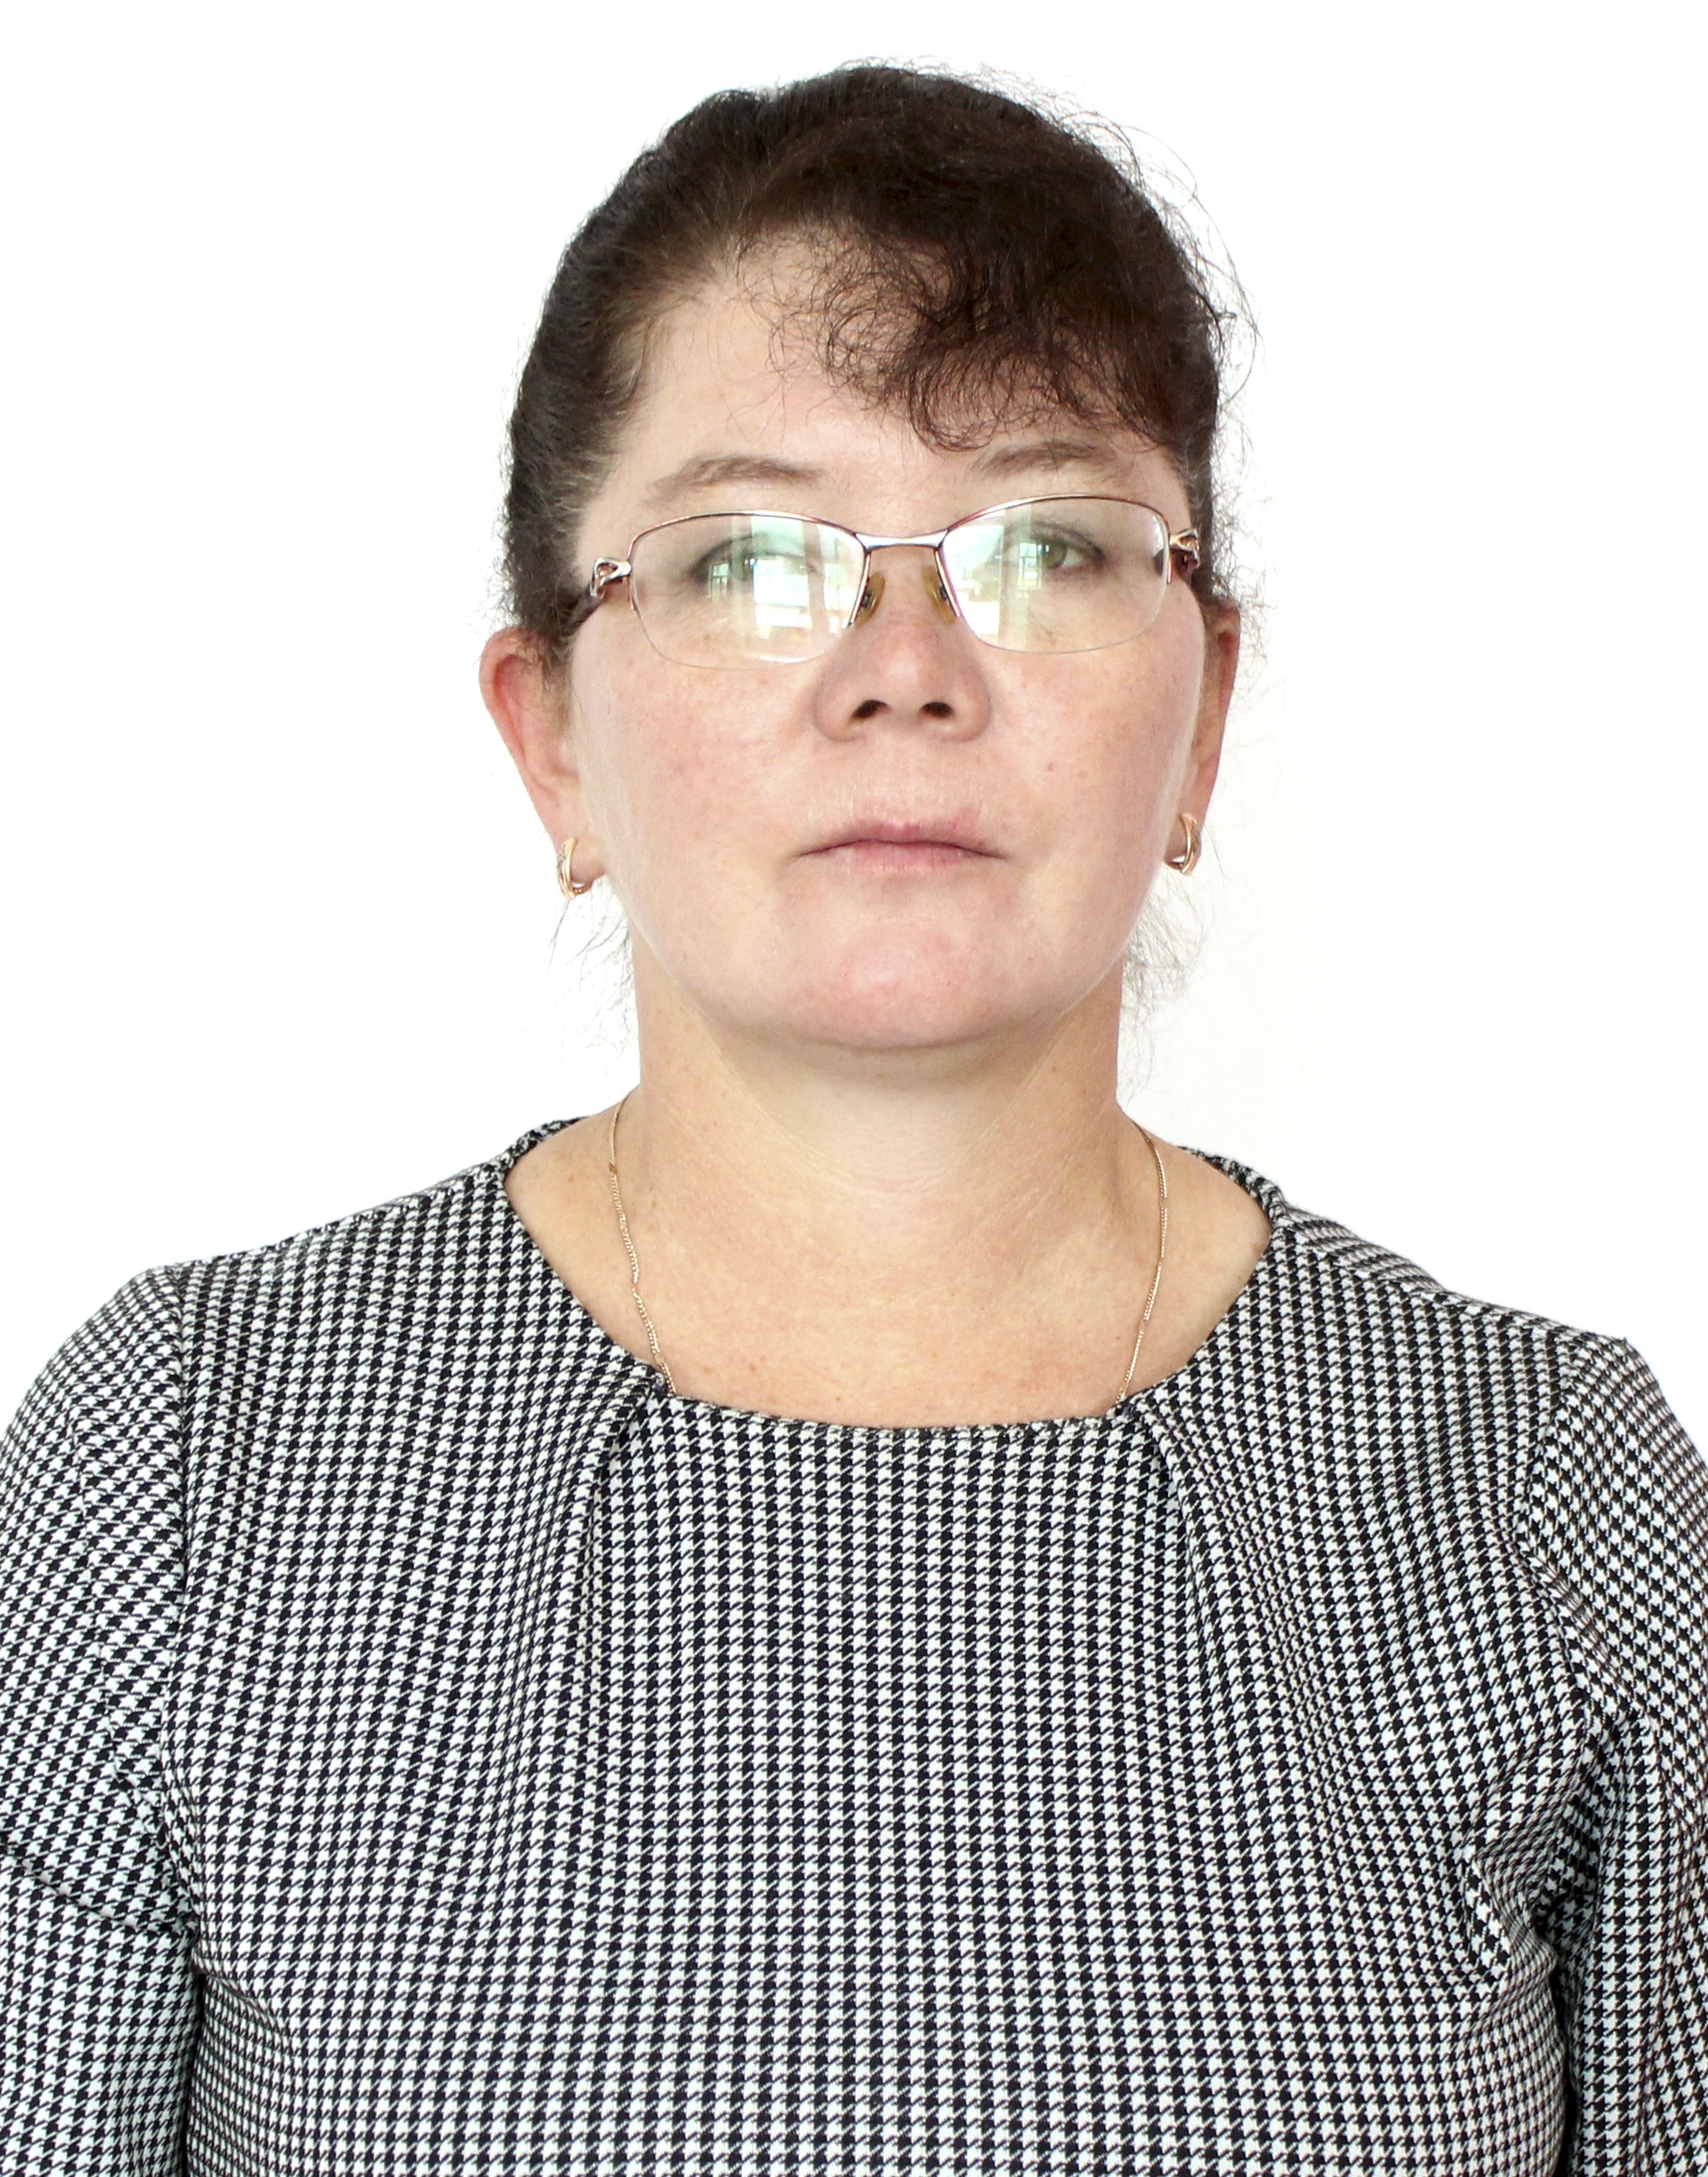 Разуваева Татьяна Александровна.